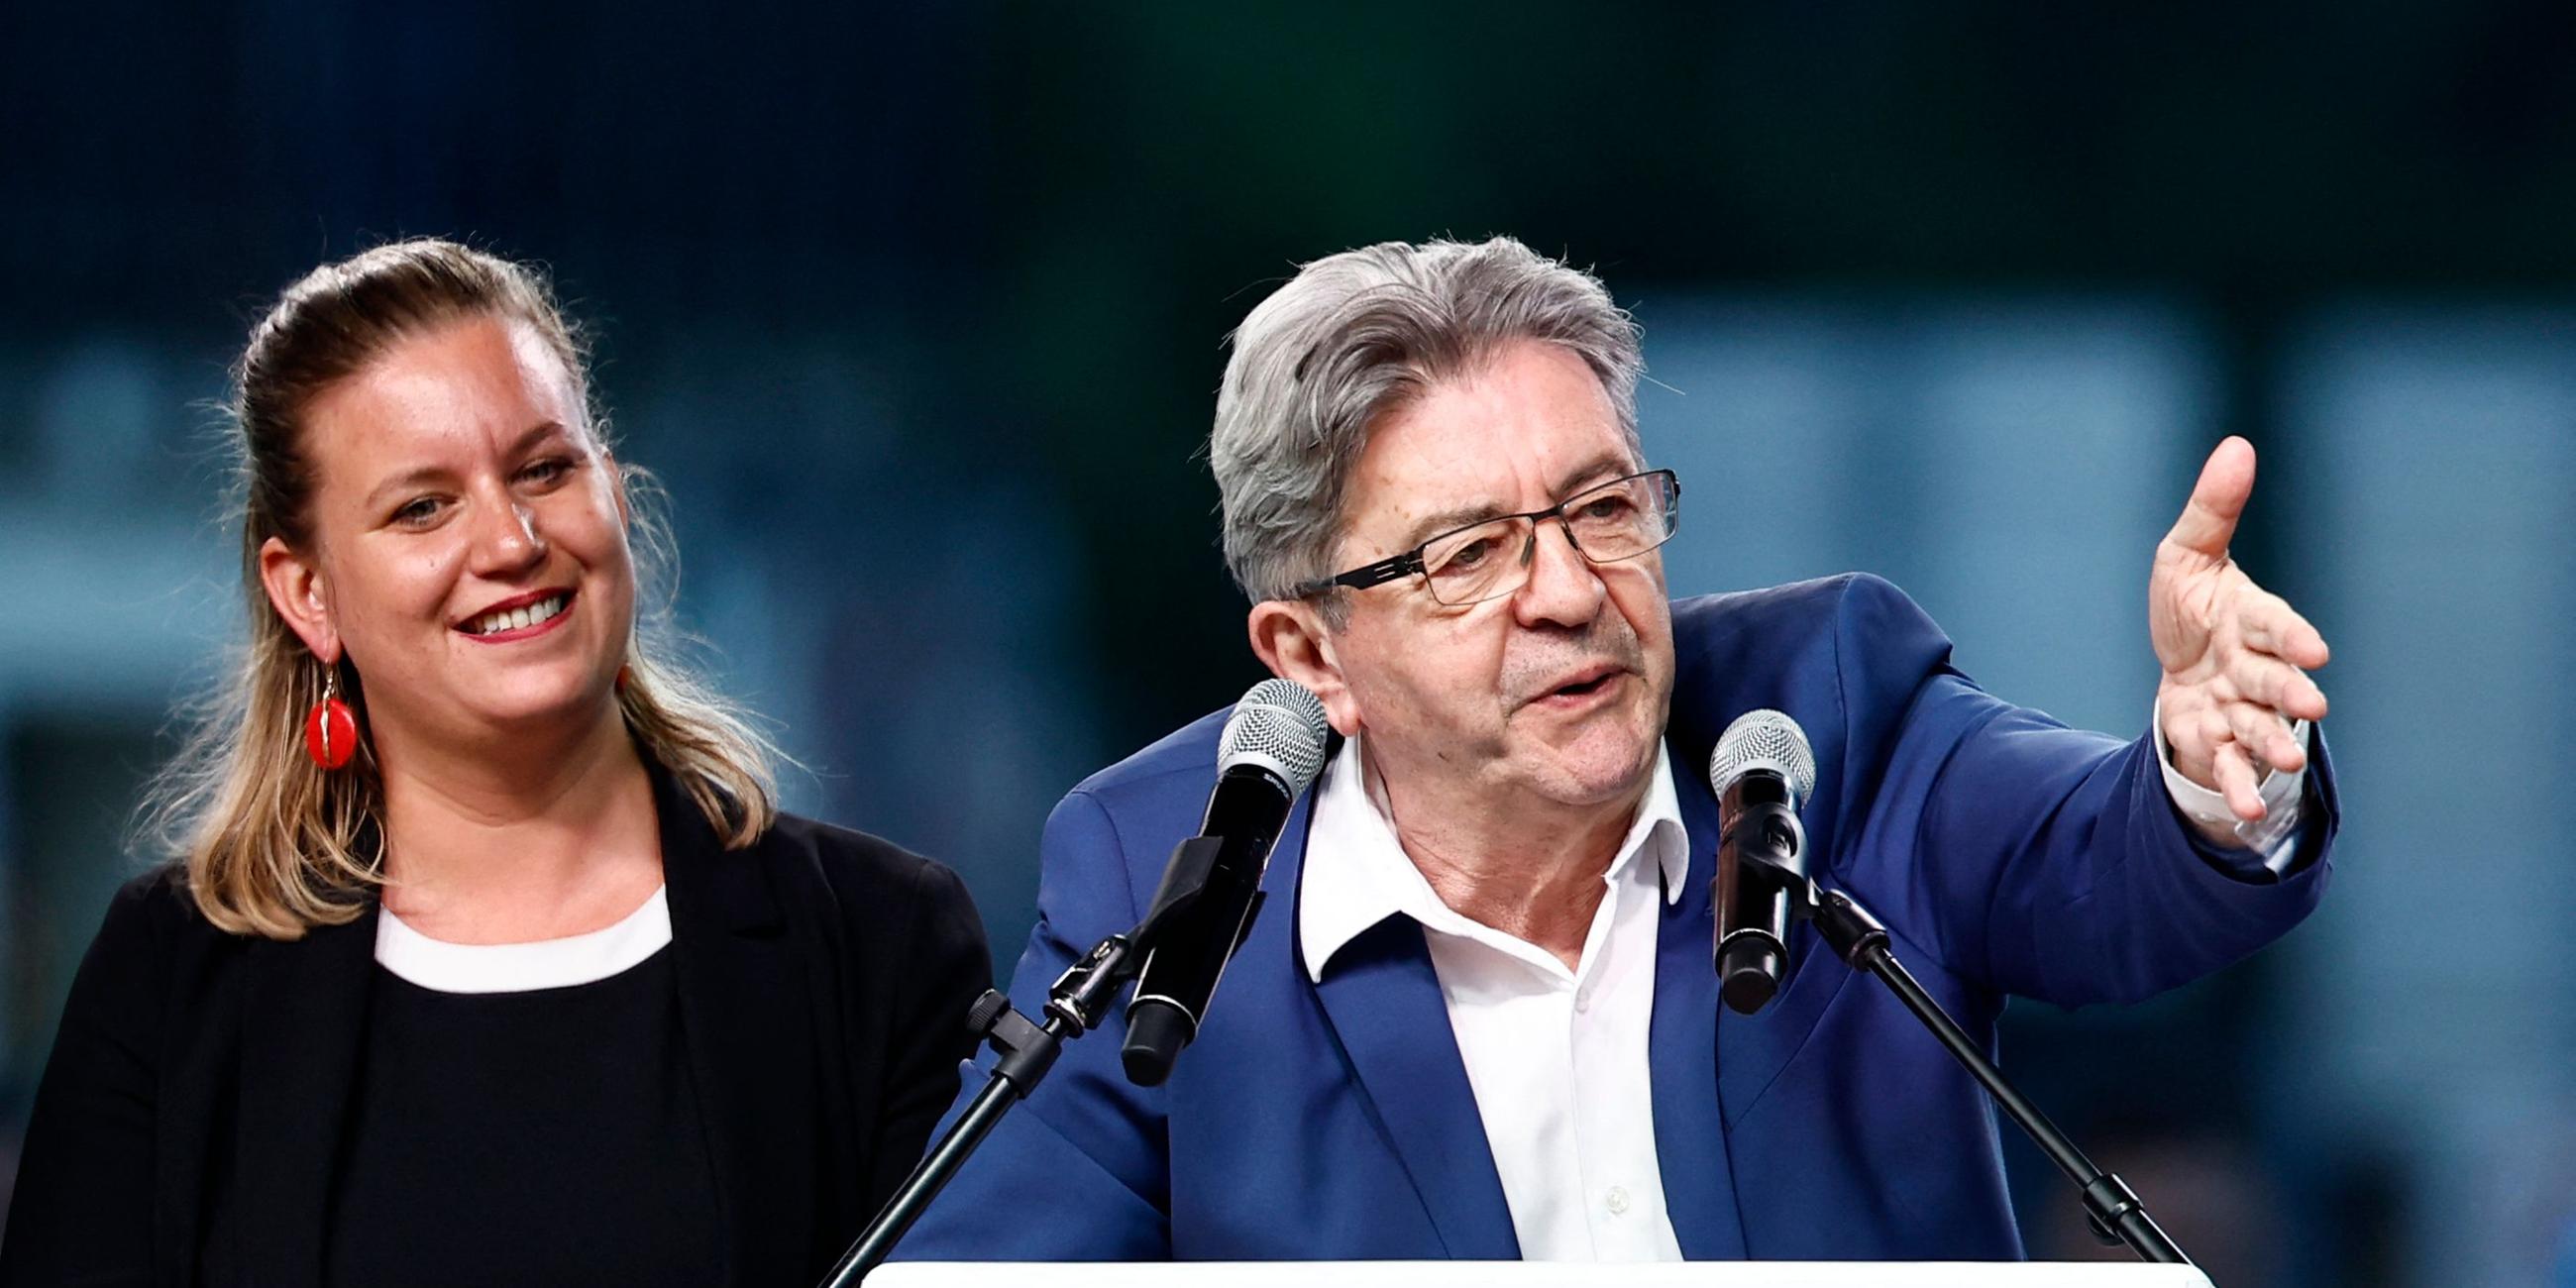 Jean-Luc Mélenchon der linken Partei France Insoumise